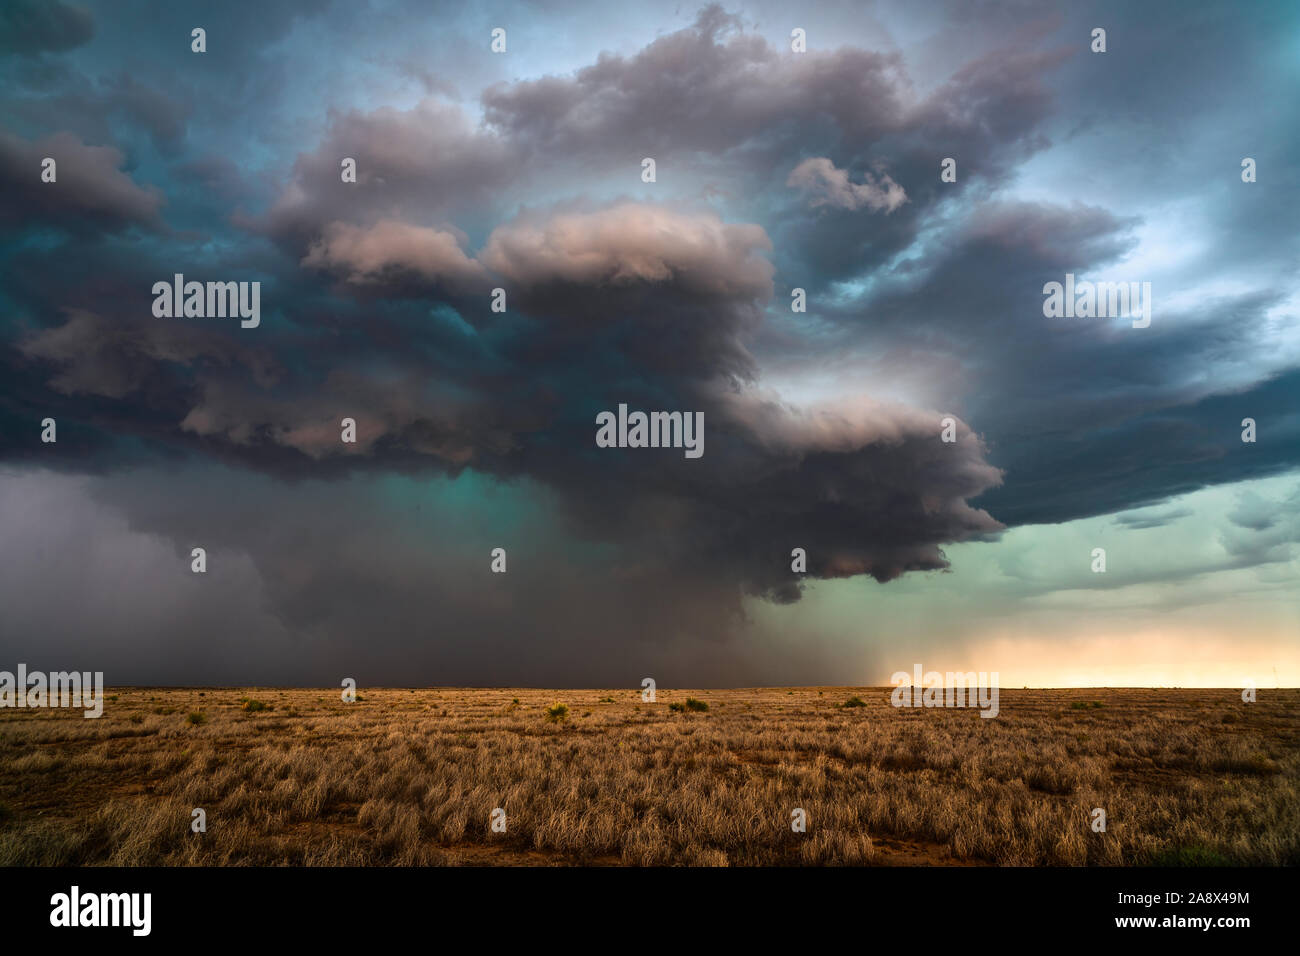 Ein supercell-Gewitter mit dramatischen Sturmwolken während eines Unwetterereignisses in New Mexico Stockfoto